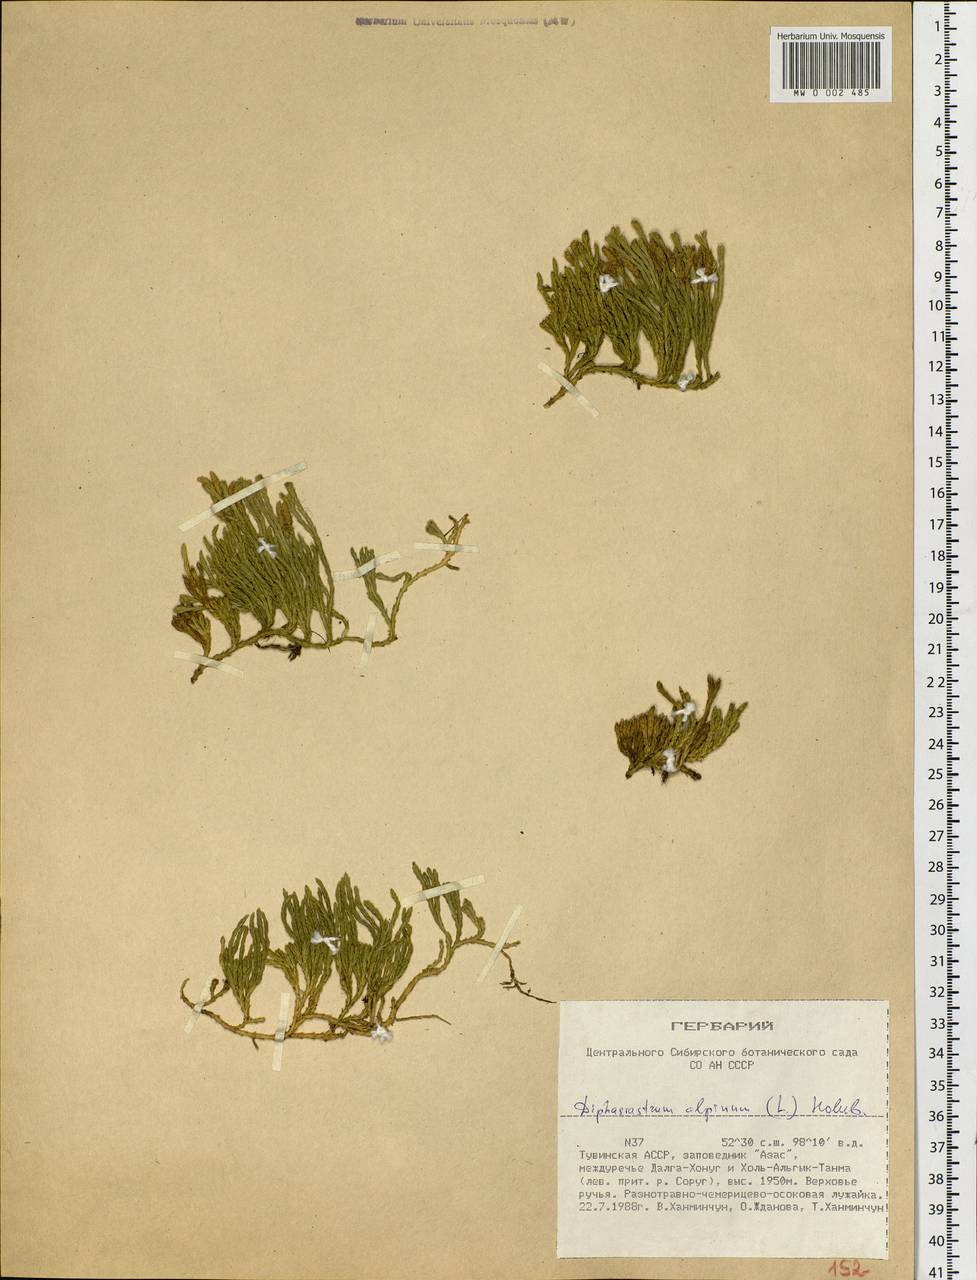 Diphasiastrum alpinum (L.) Holub, Siberia, Altai & Sayany Mountains (S2) (Russia)